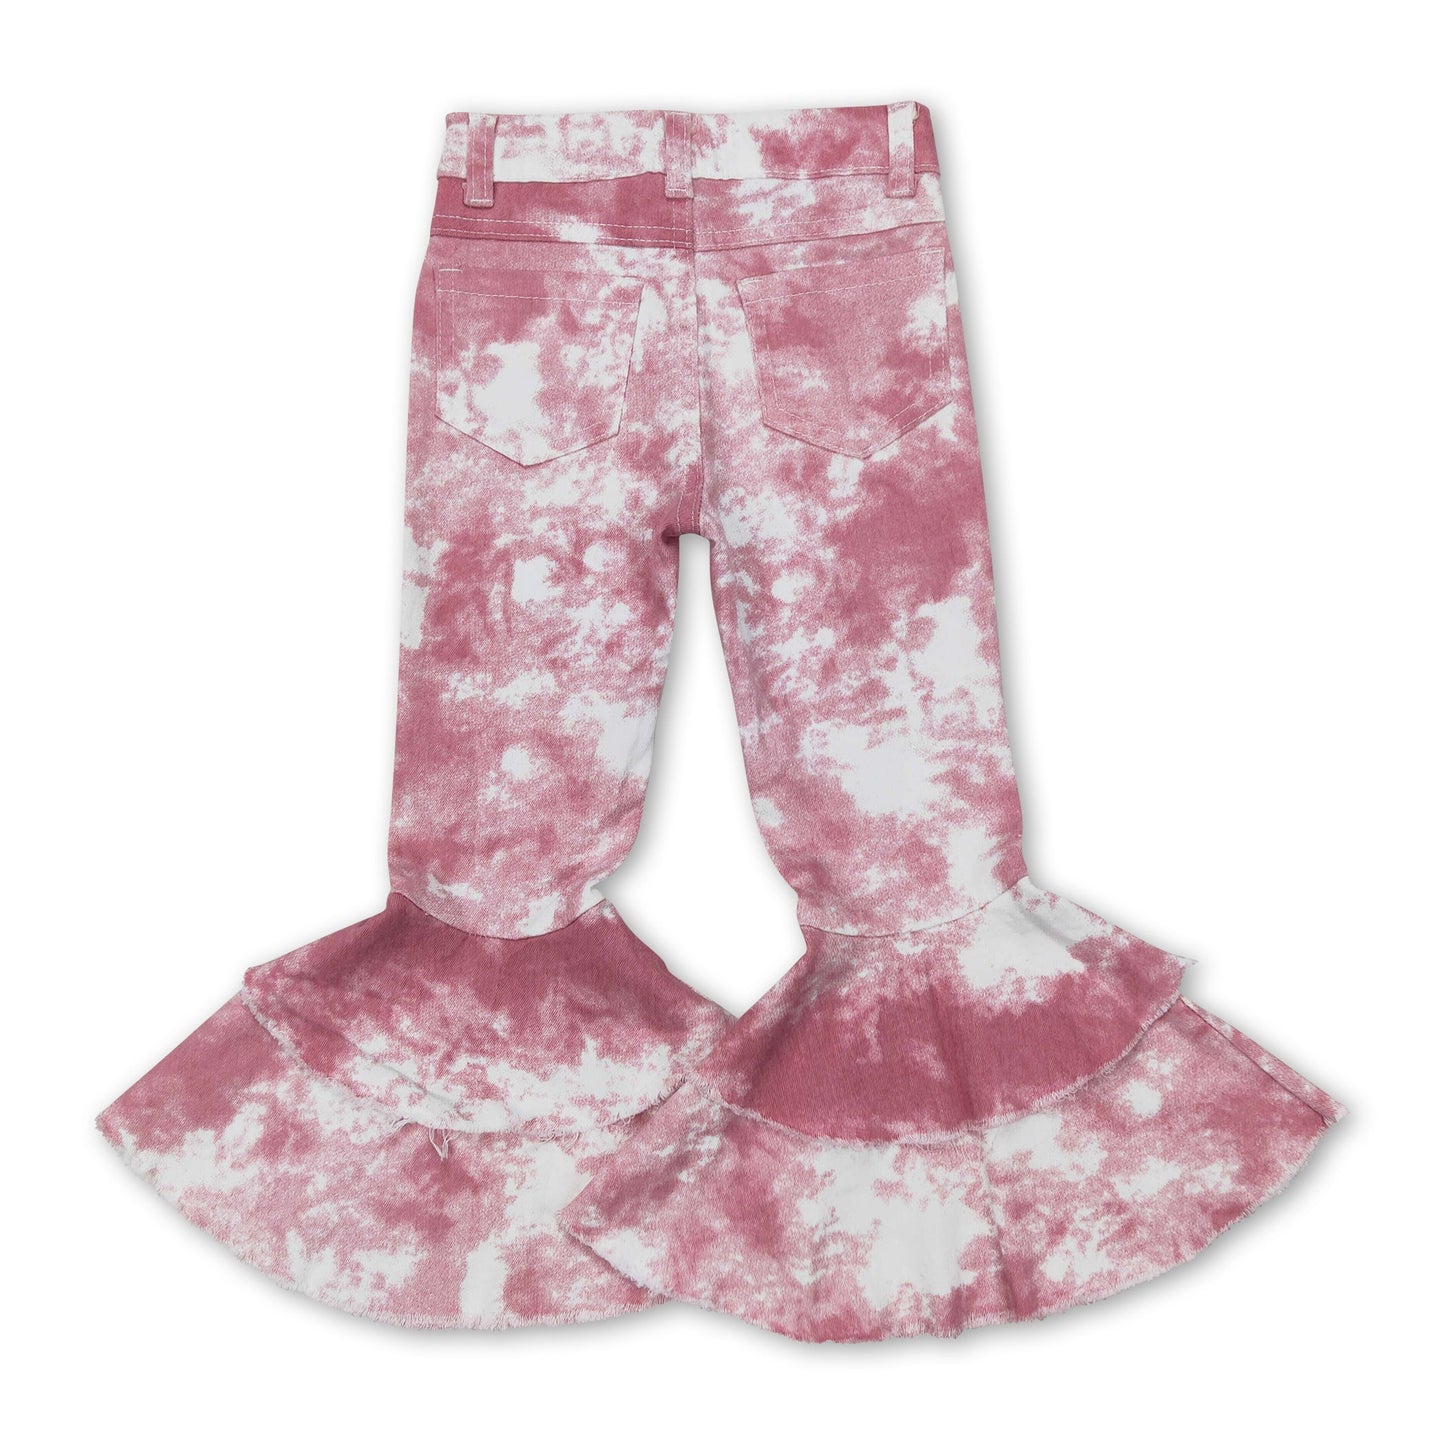 Pink tie dye ruffle bell bottom pants girls jeans